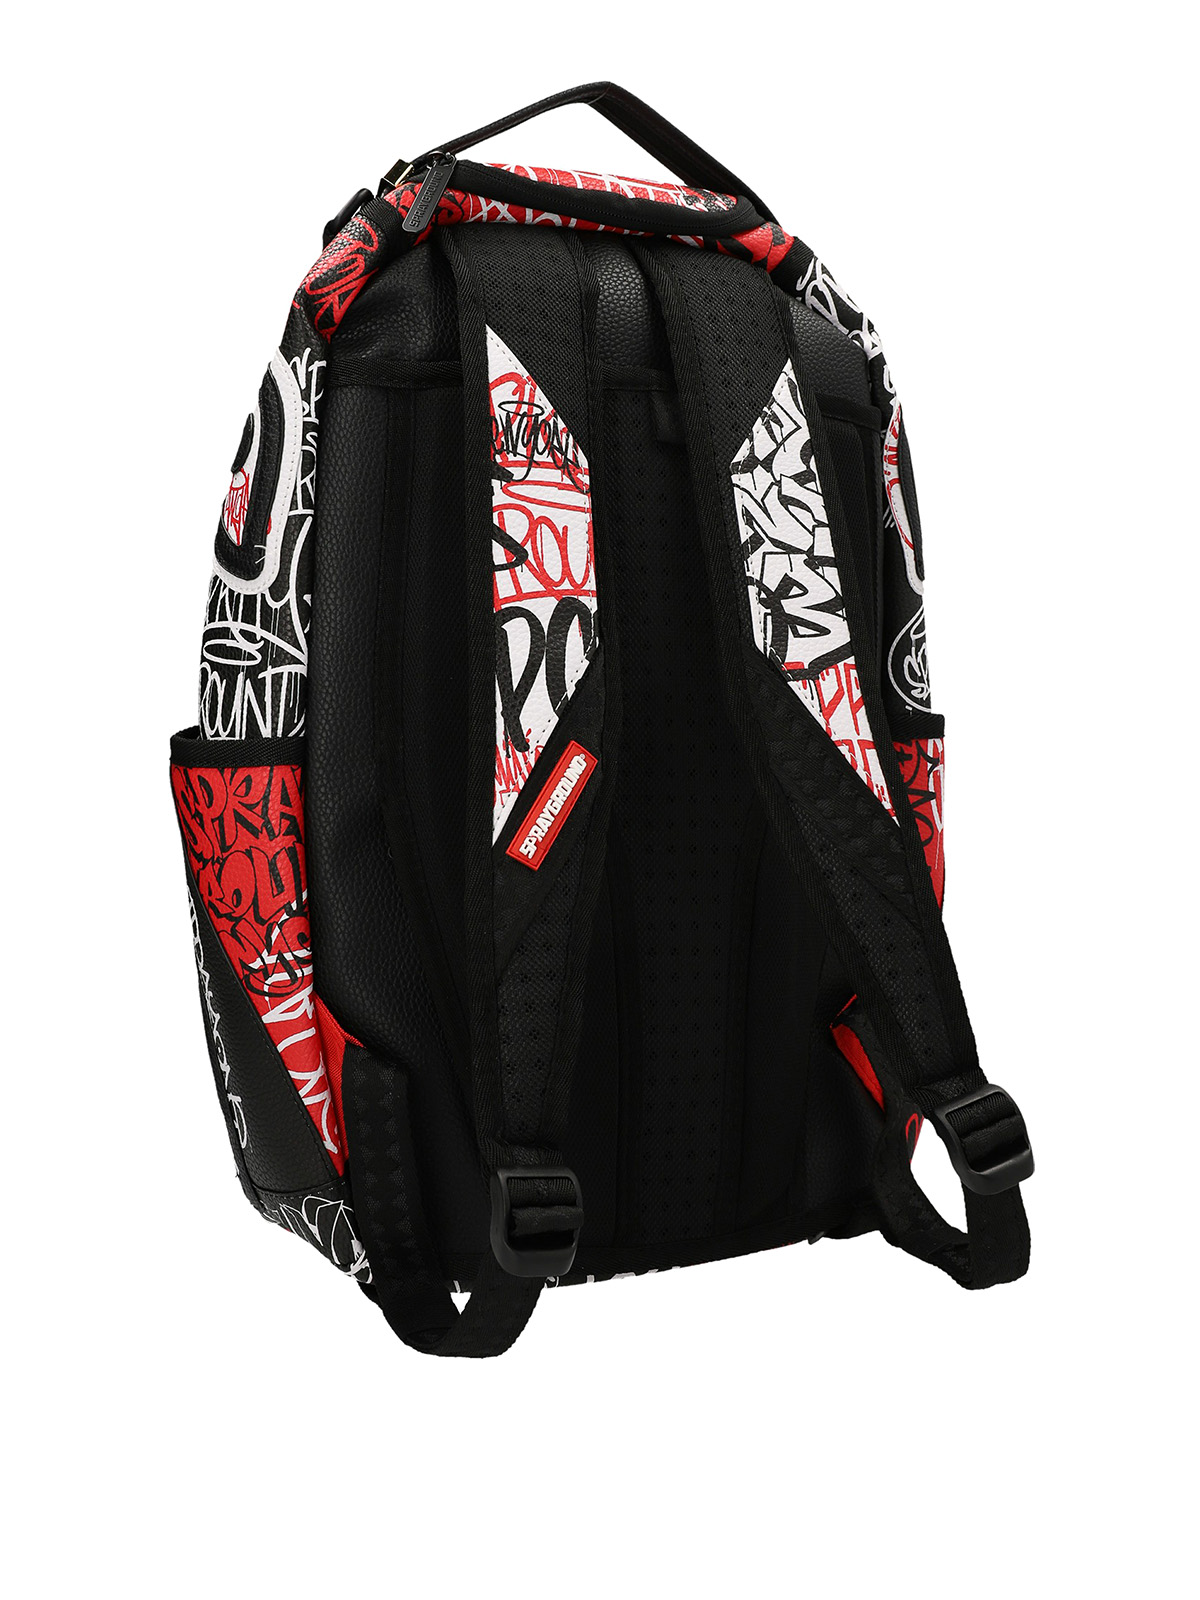 Backpacks Sprayground - Vandal backpack - B4120NSZ | Shop online at iKRIX